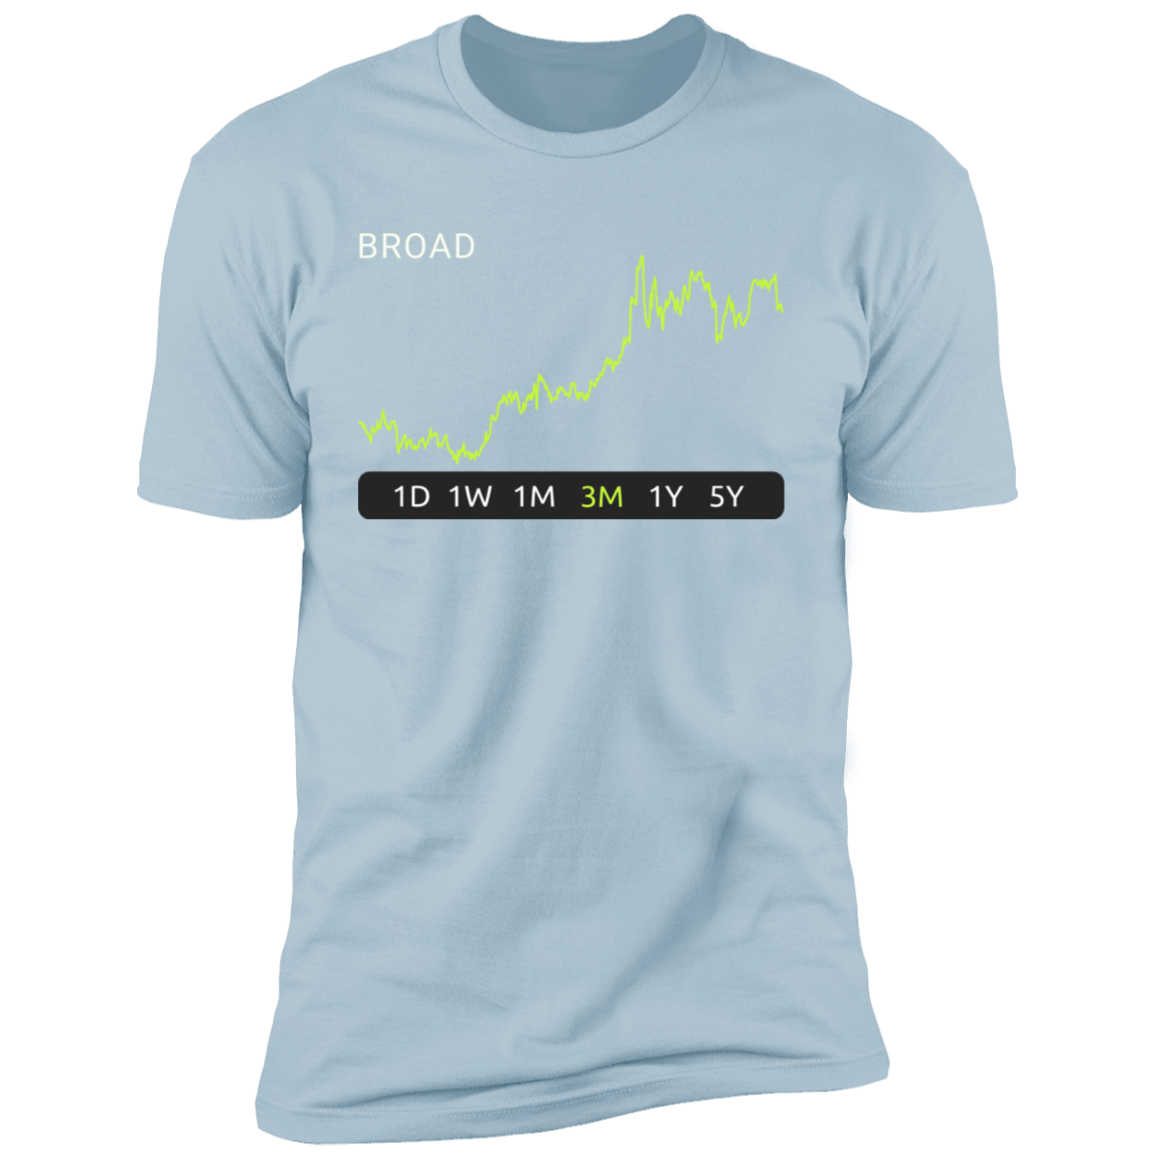 BROAD Stock 3m Premium T-Shirt